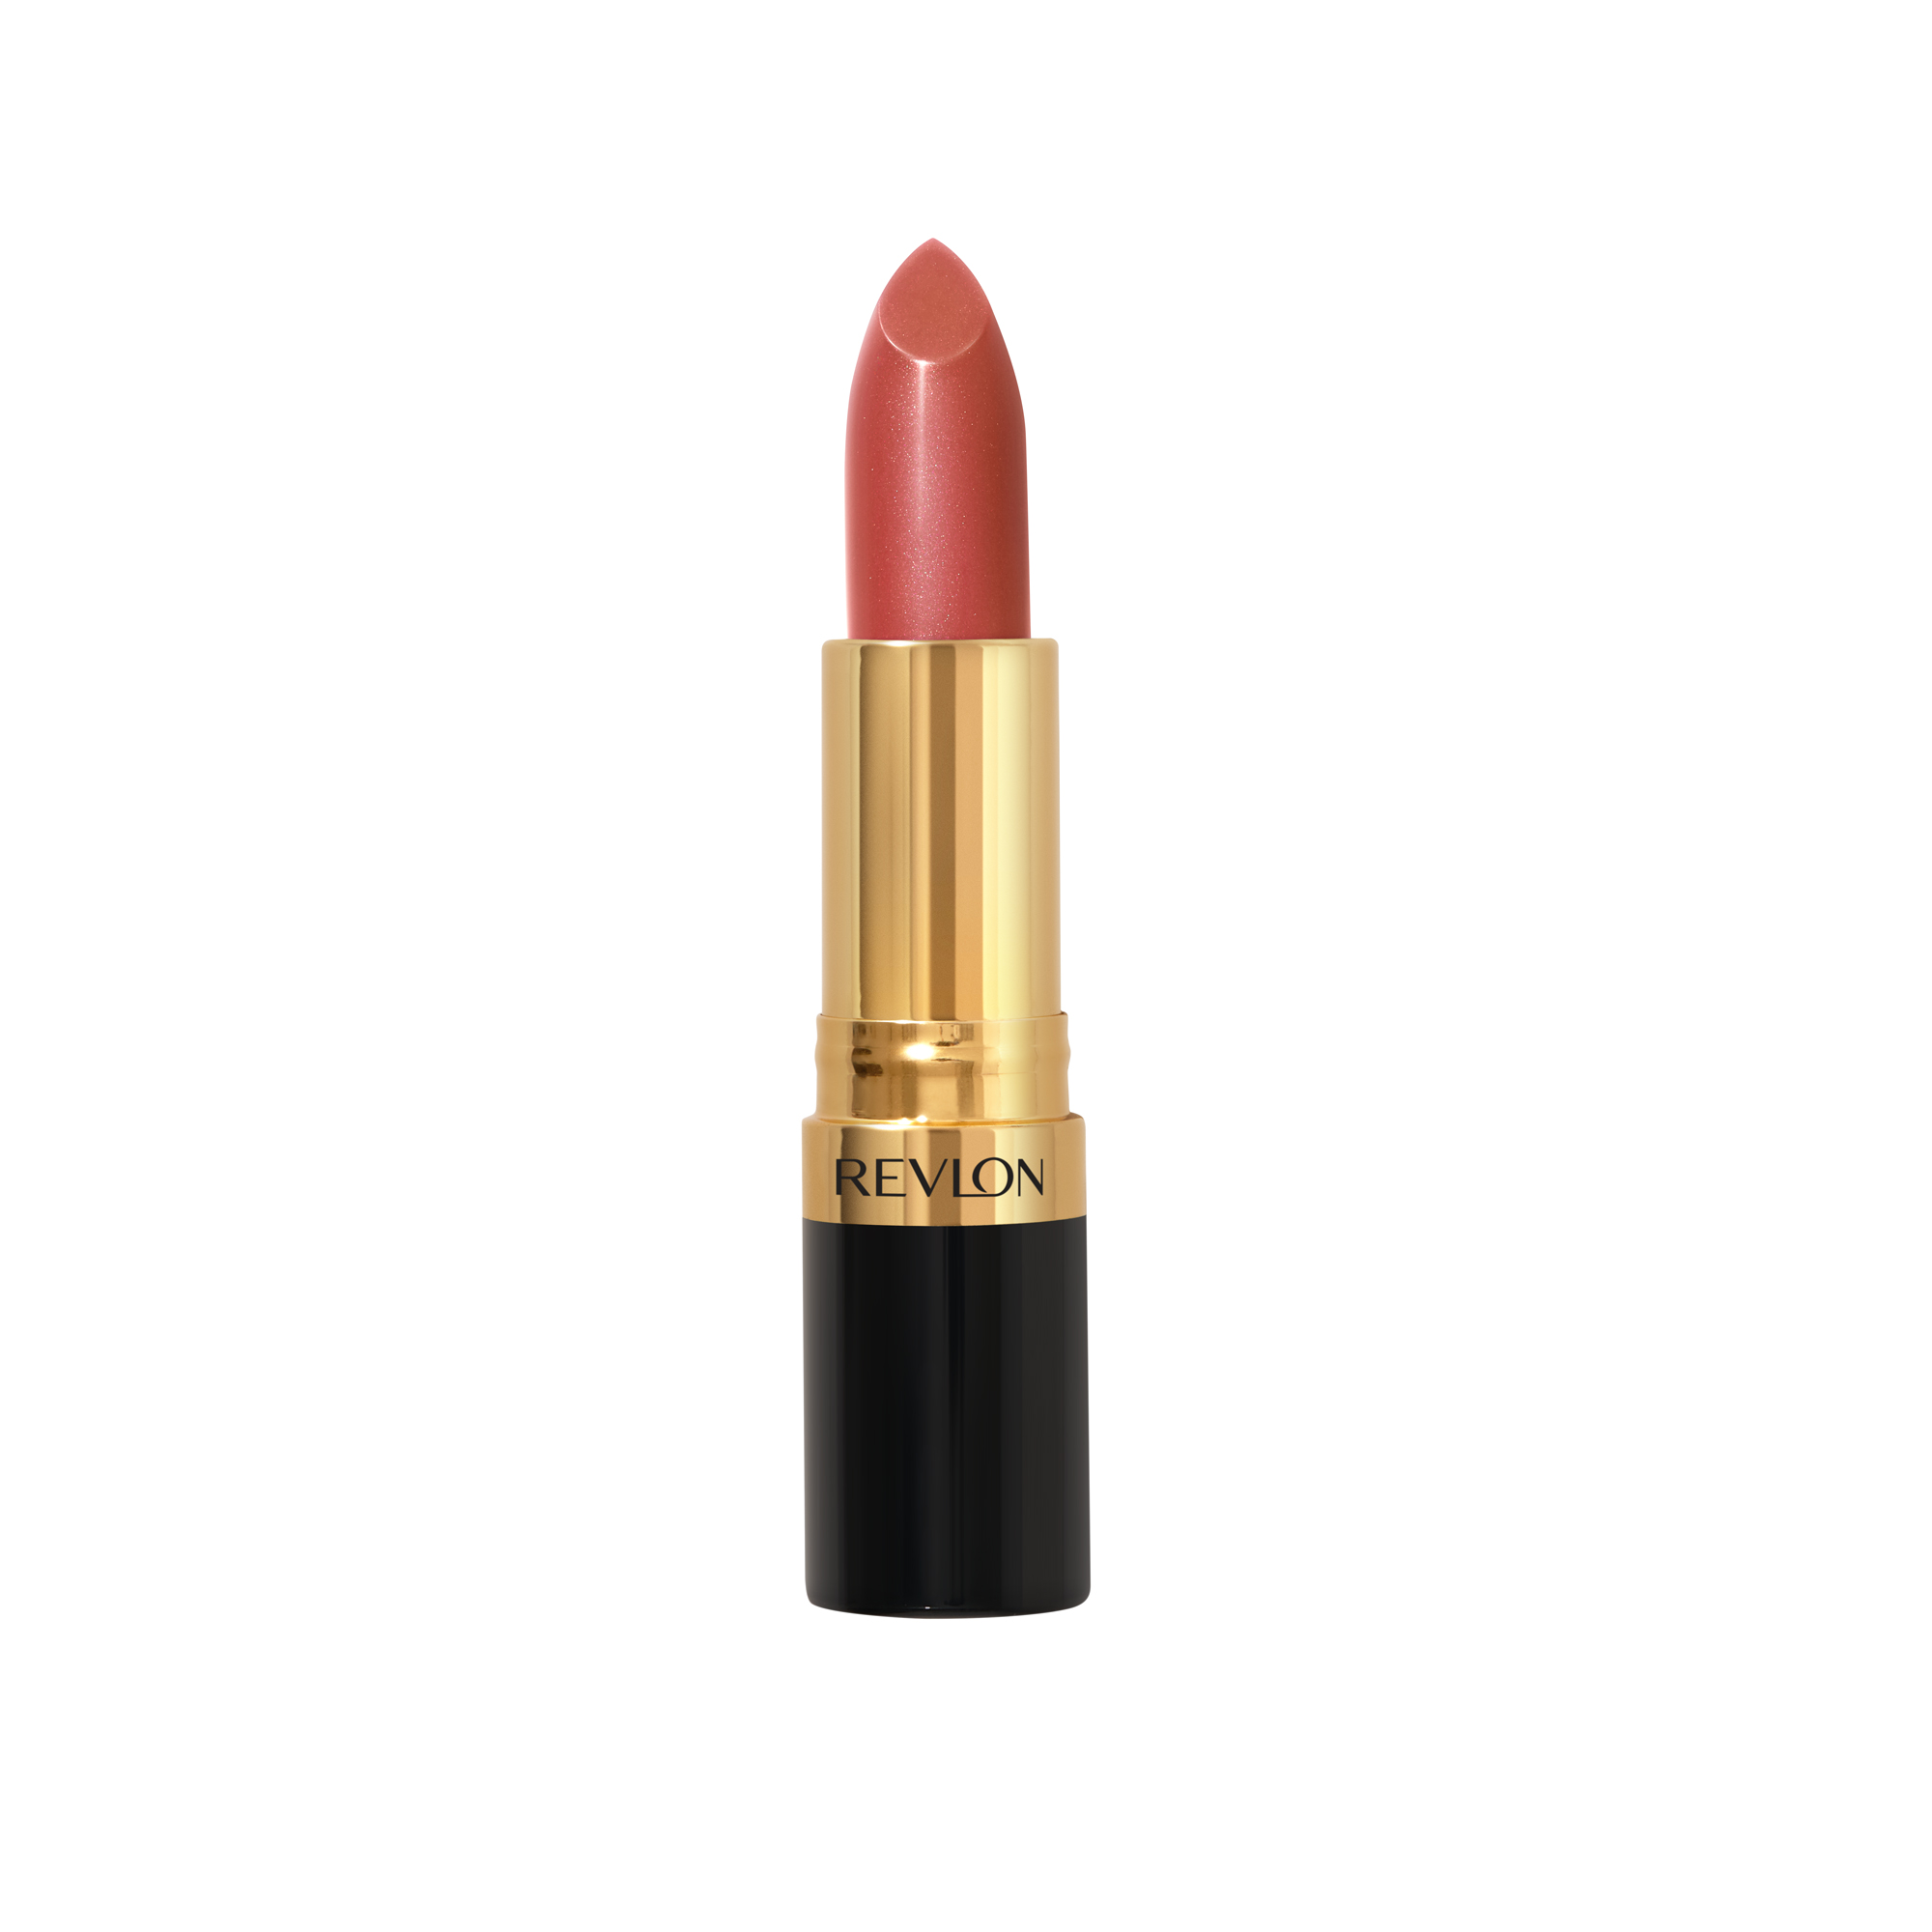 Revlon Super Lustrous Lipstick, Peach Parfait - image 1 of 7